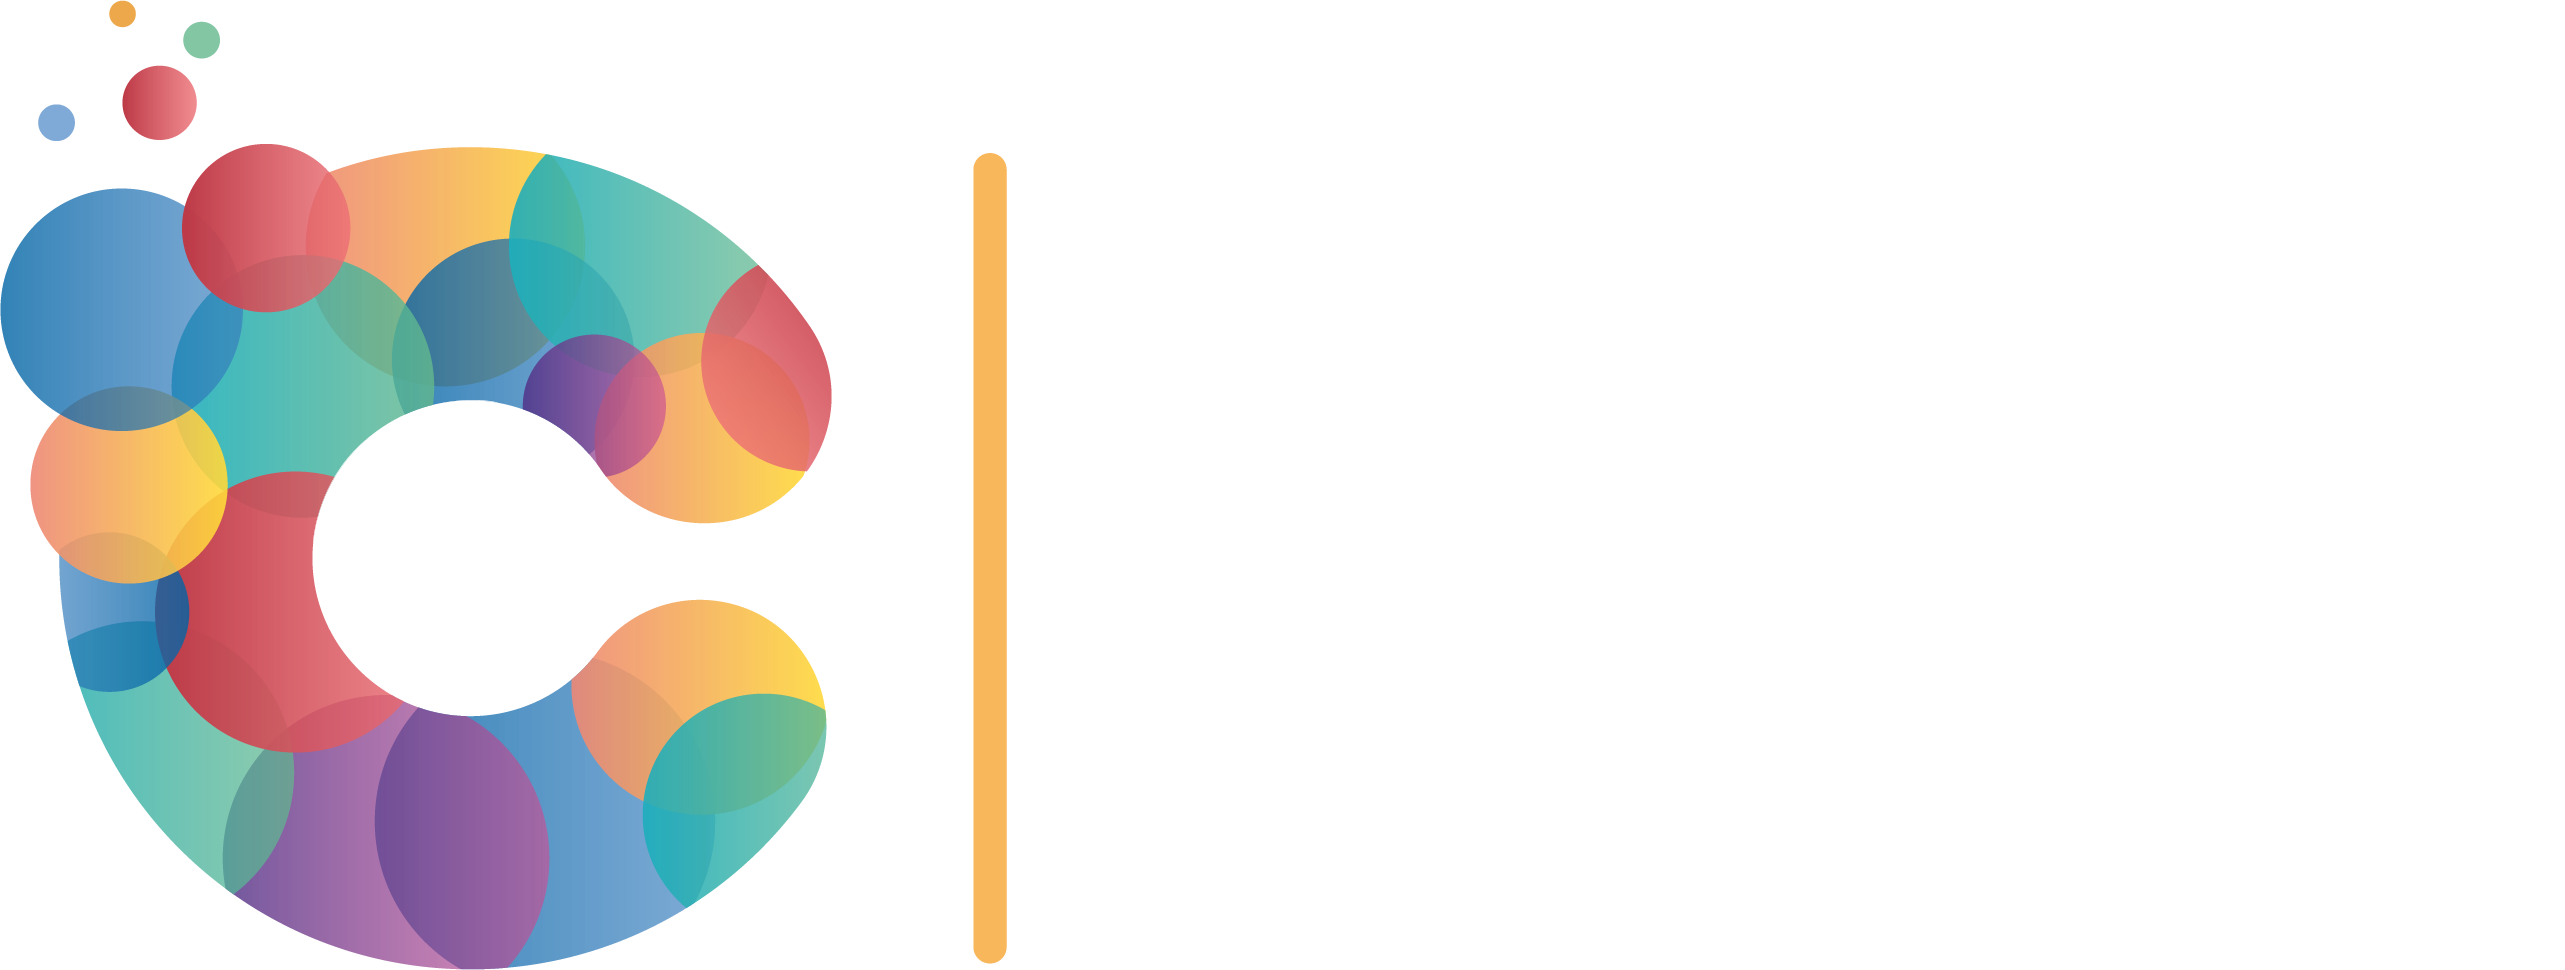 Community Club App | One Club - One App - One Community